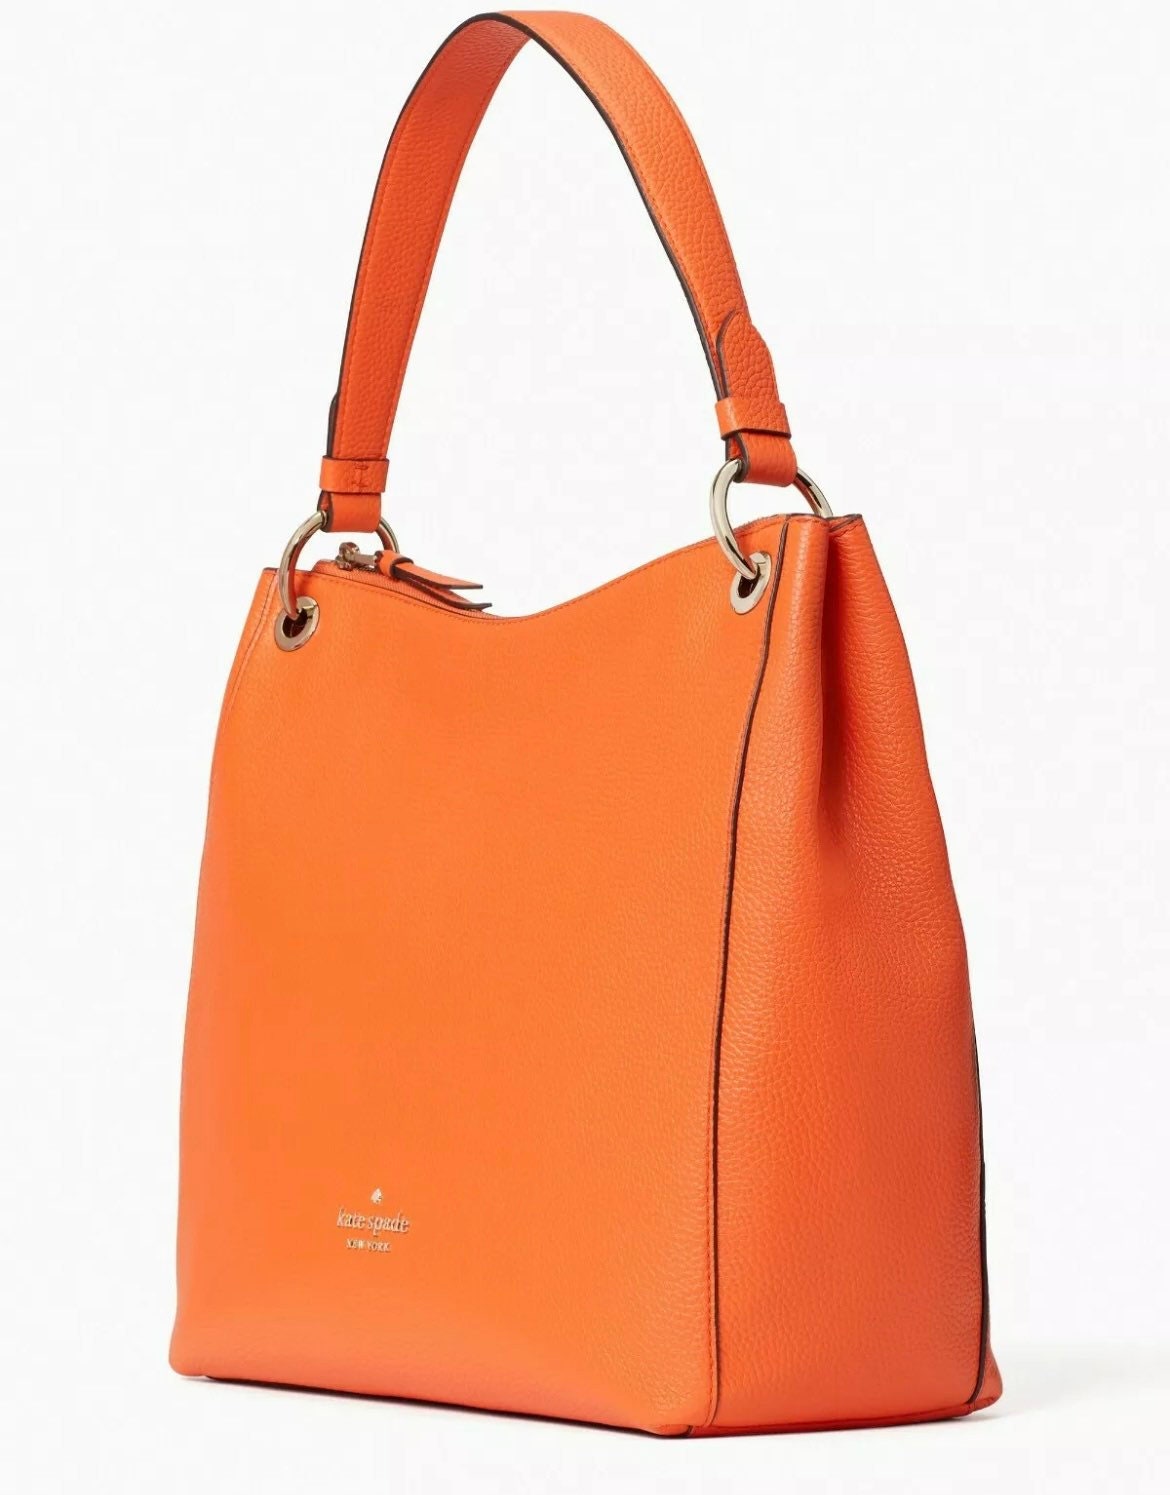 Kate Spade Kat Shoulder Bag Orange Leather Large Hobo WKR00311 - Etsy UK